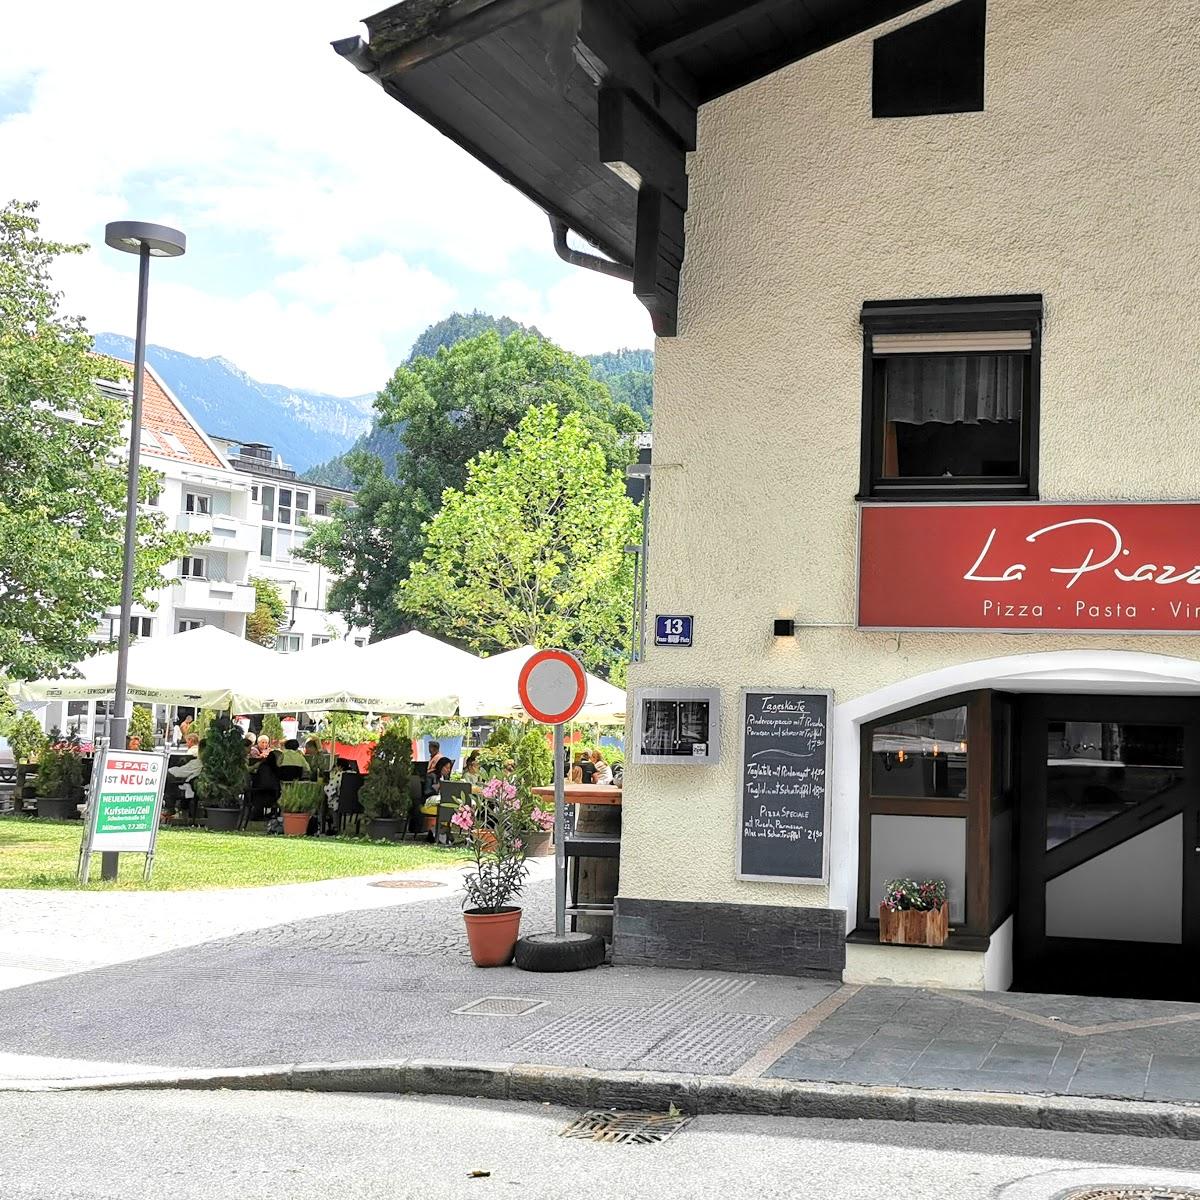 Restaurant "La Piazza" in Kufstein